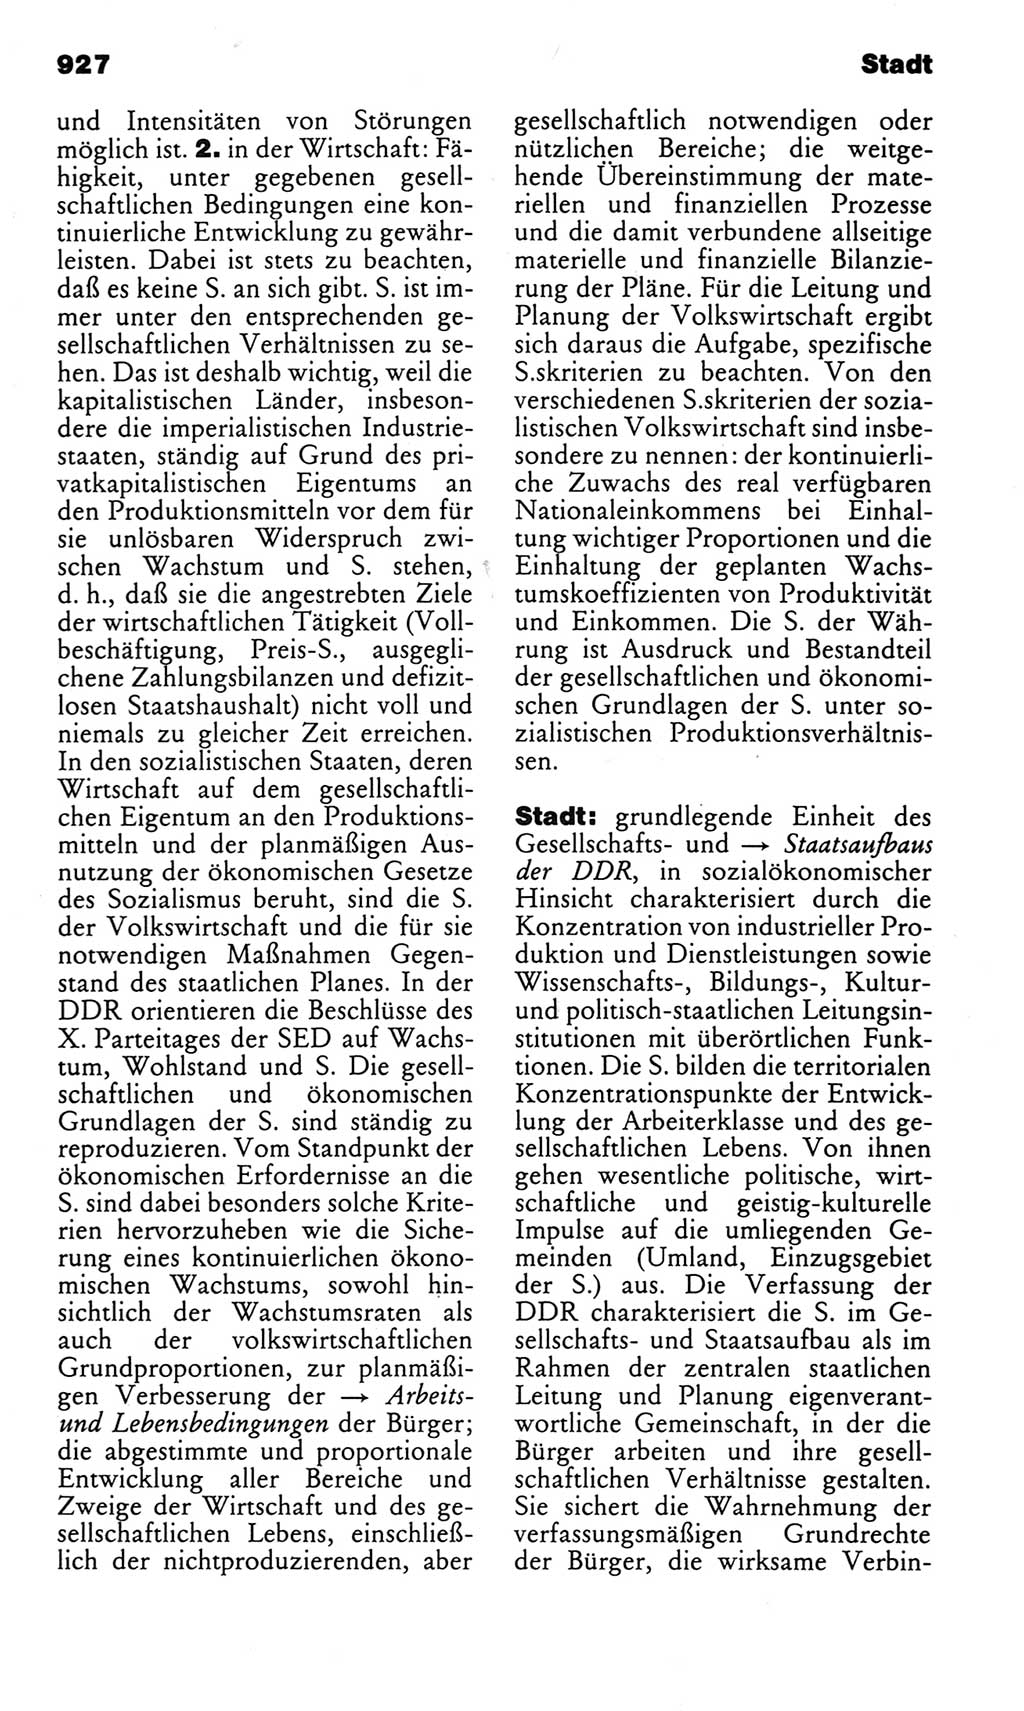 Kleines politisches Wörterbuch [Deutsche Demokratische Republik (DDR)] 1983, Seite 927 (Kl. pol. Wb. DDR 1983, S. 927)